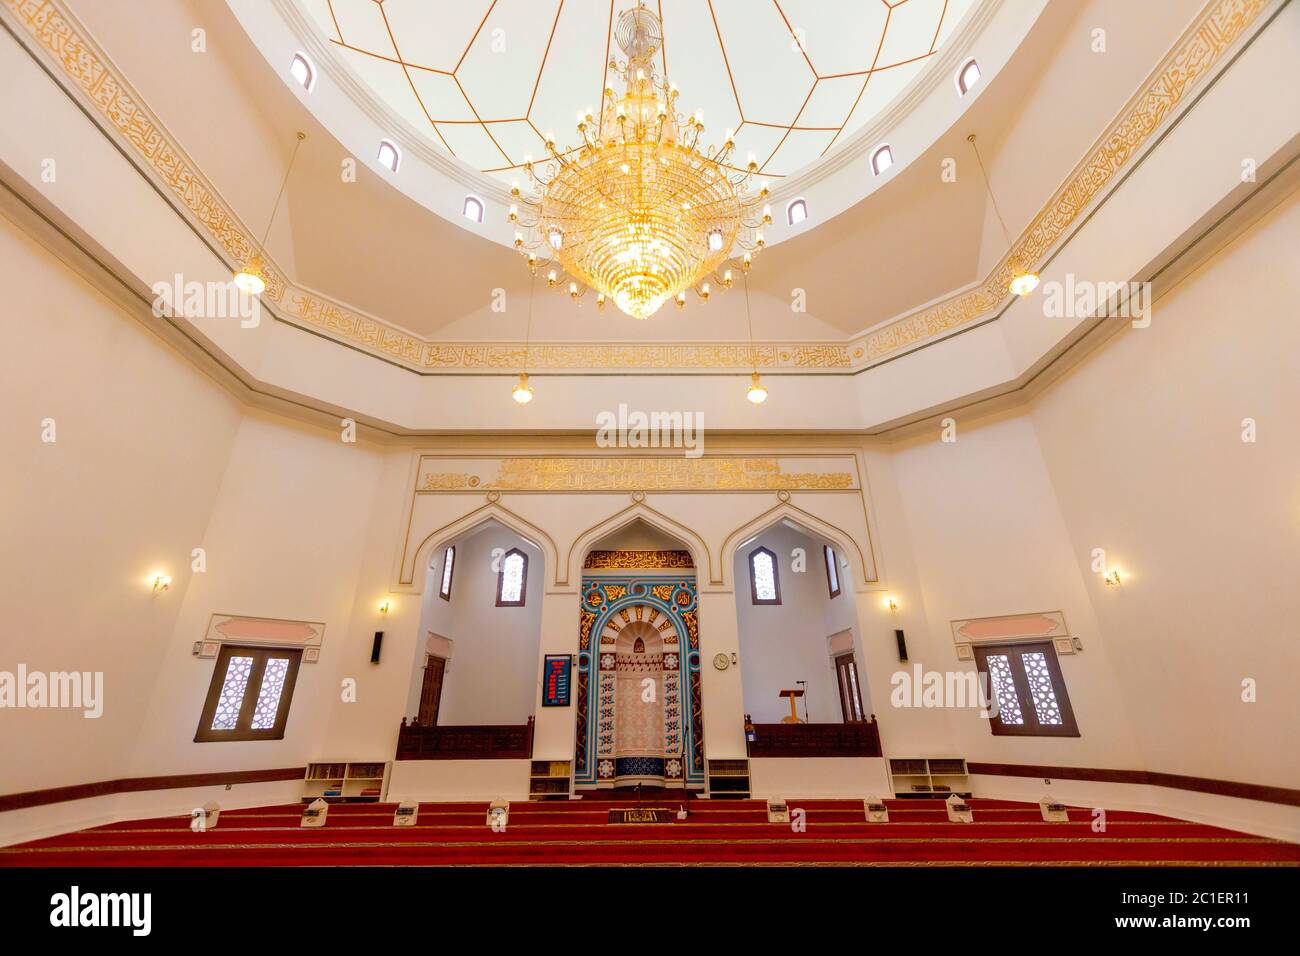 Die Moschee, die Teil des Sheikh Mohammed Center for Cultural Understanding ist, das mehrere Programme anbietet, um den Besuchern nicht nur das muslimische Leben, sondern auch die Geschichte, Architektur und Essen der Region vorzustellen. Dubai, VAE. Stockfoto